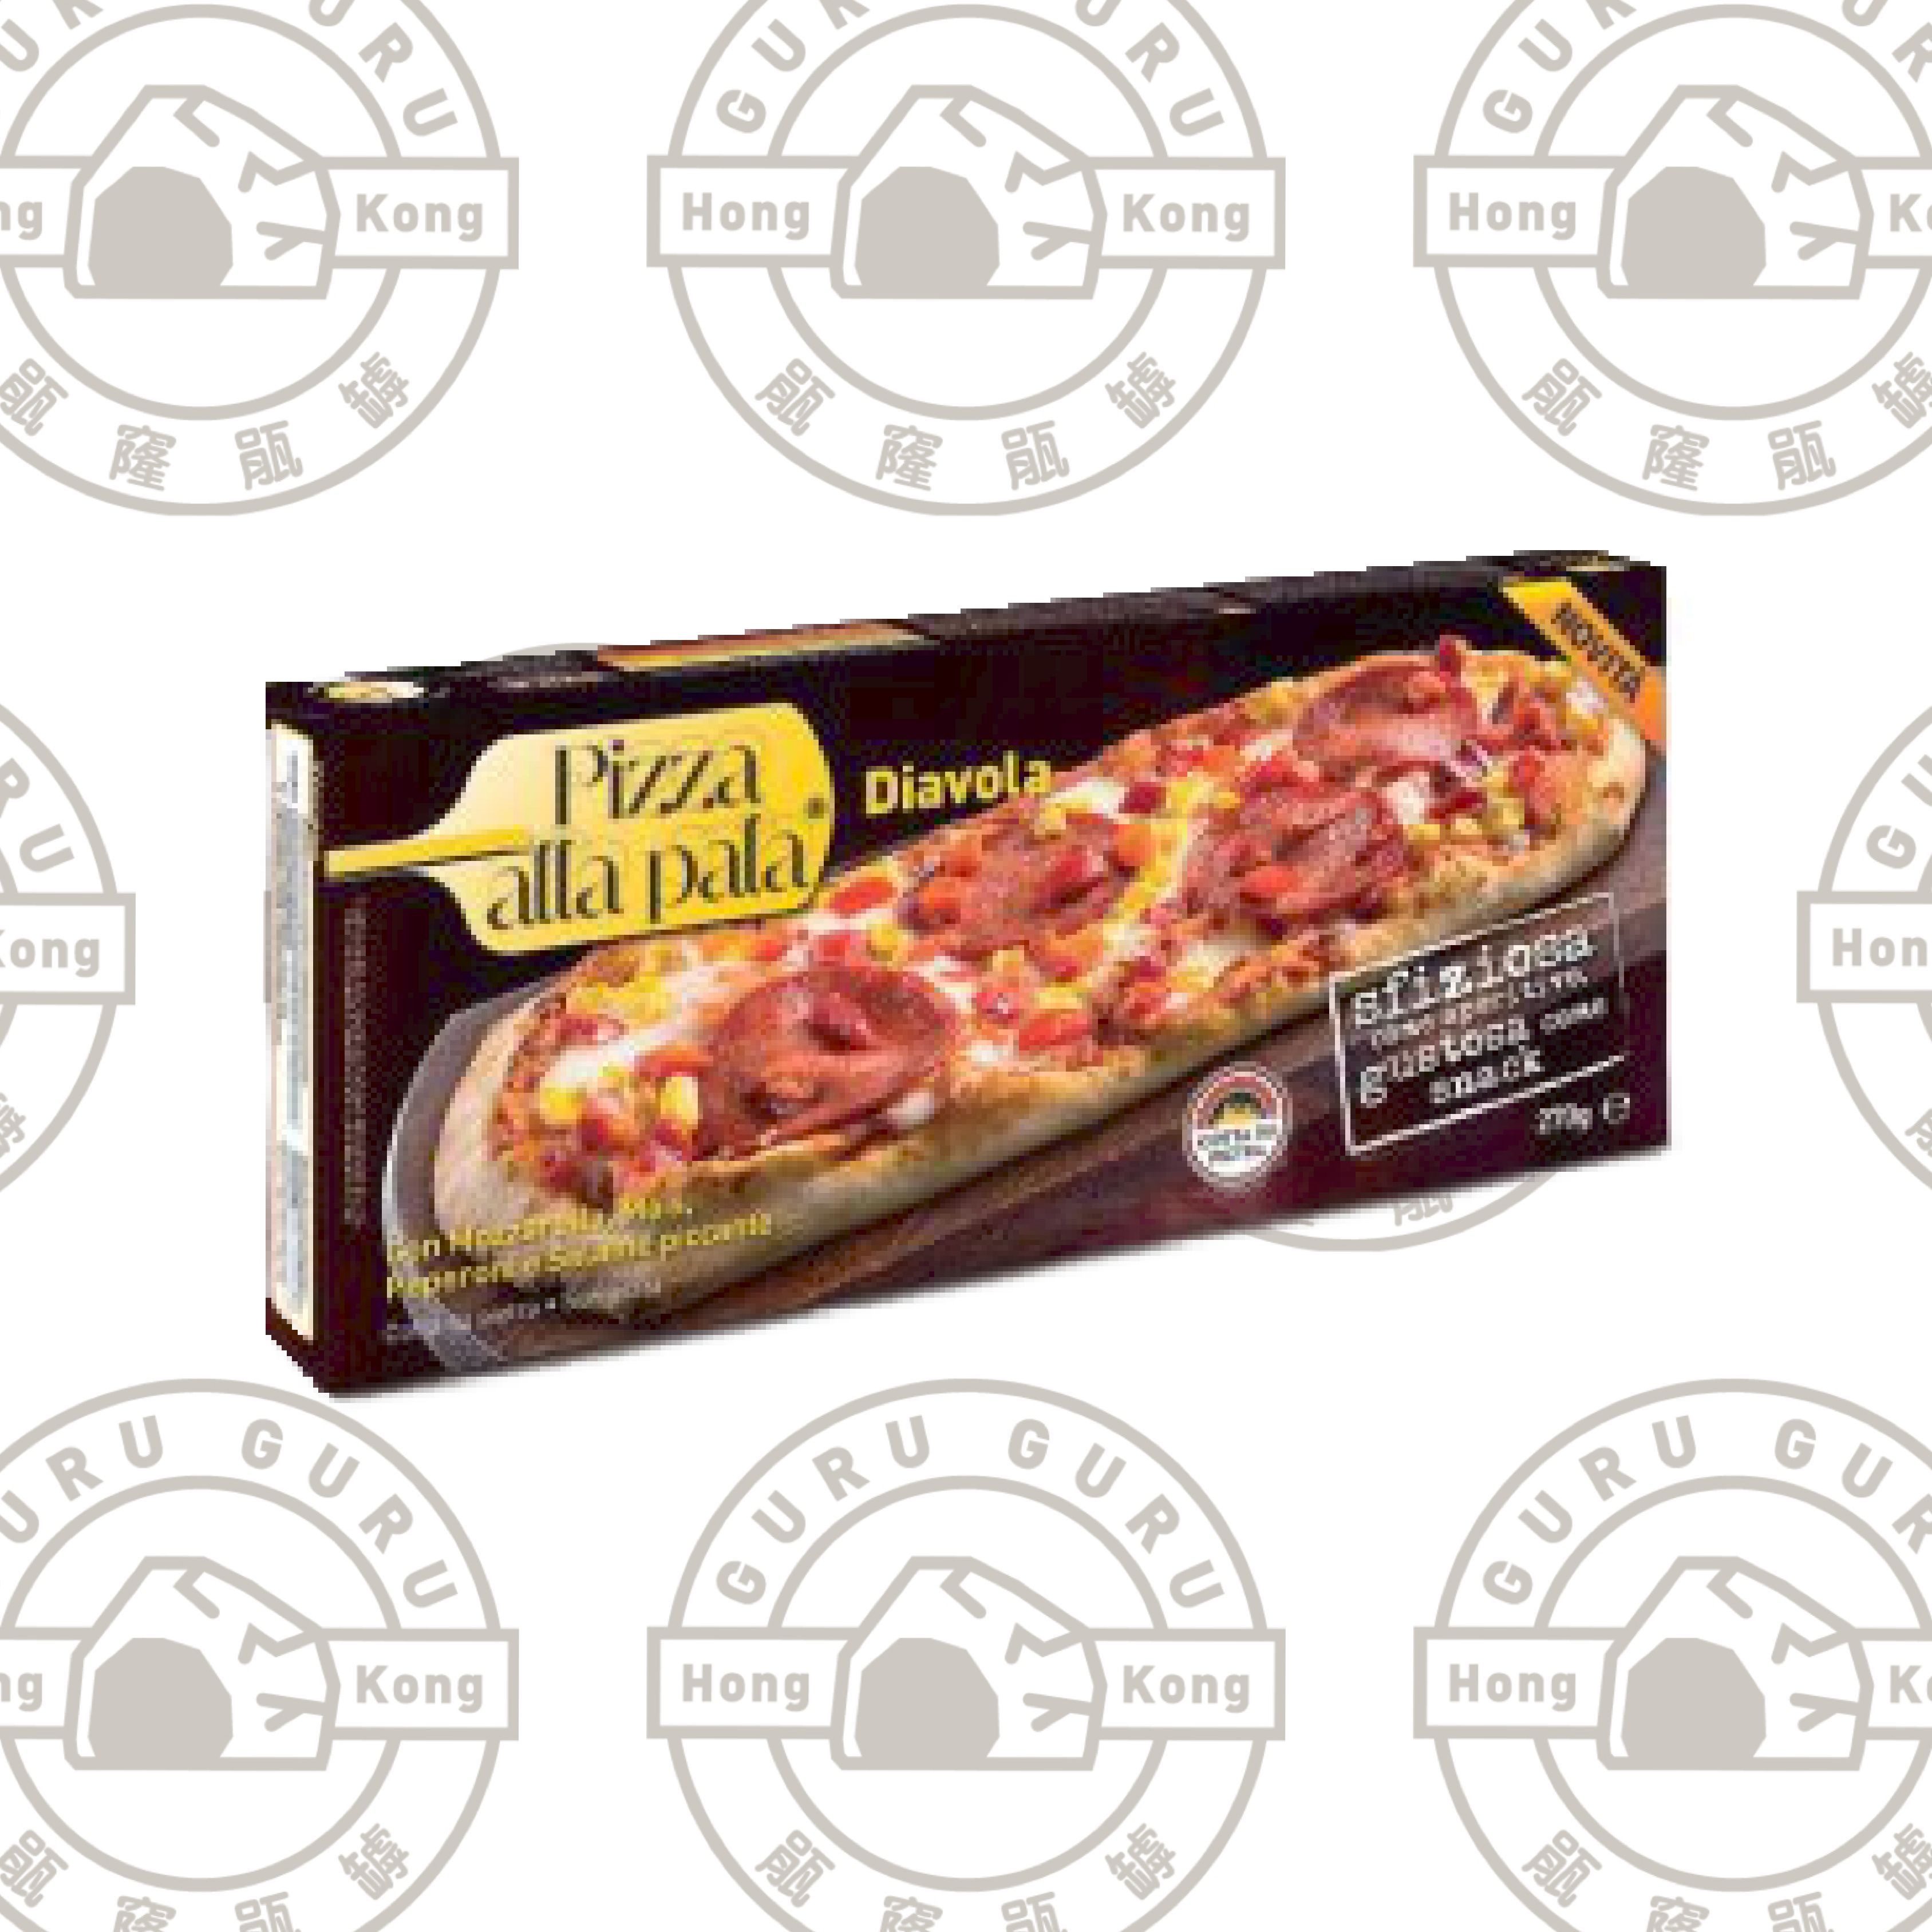 意大利滋味辣肉腸31cm長pizza可氣炸270g（急凍-18度）